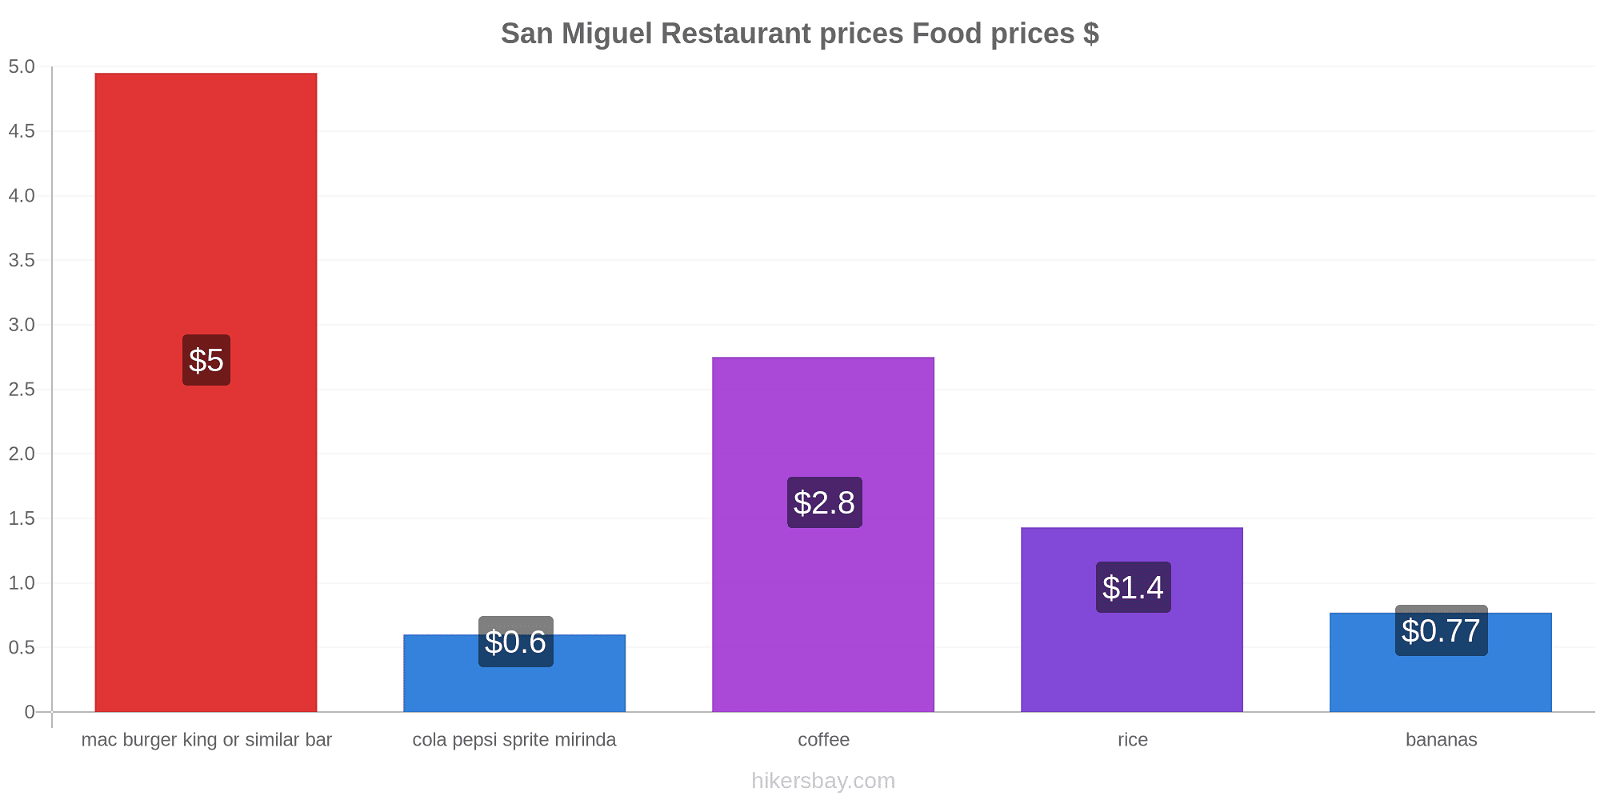 San Miguel price changes hikersbay.com